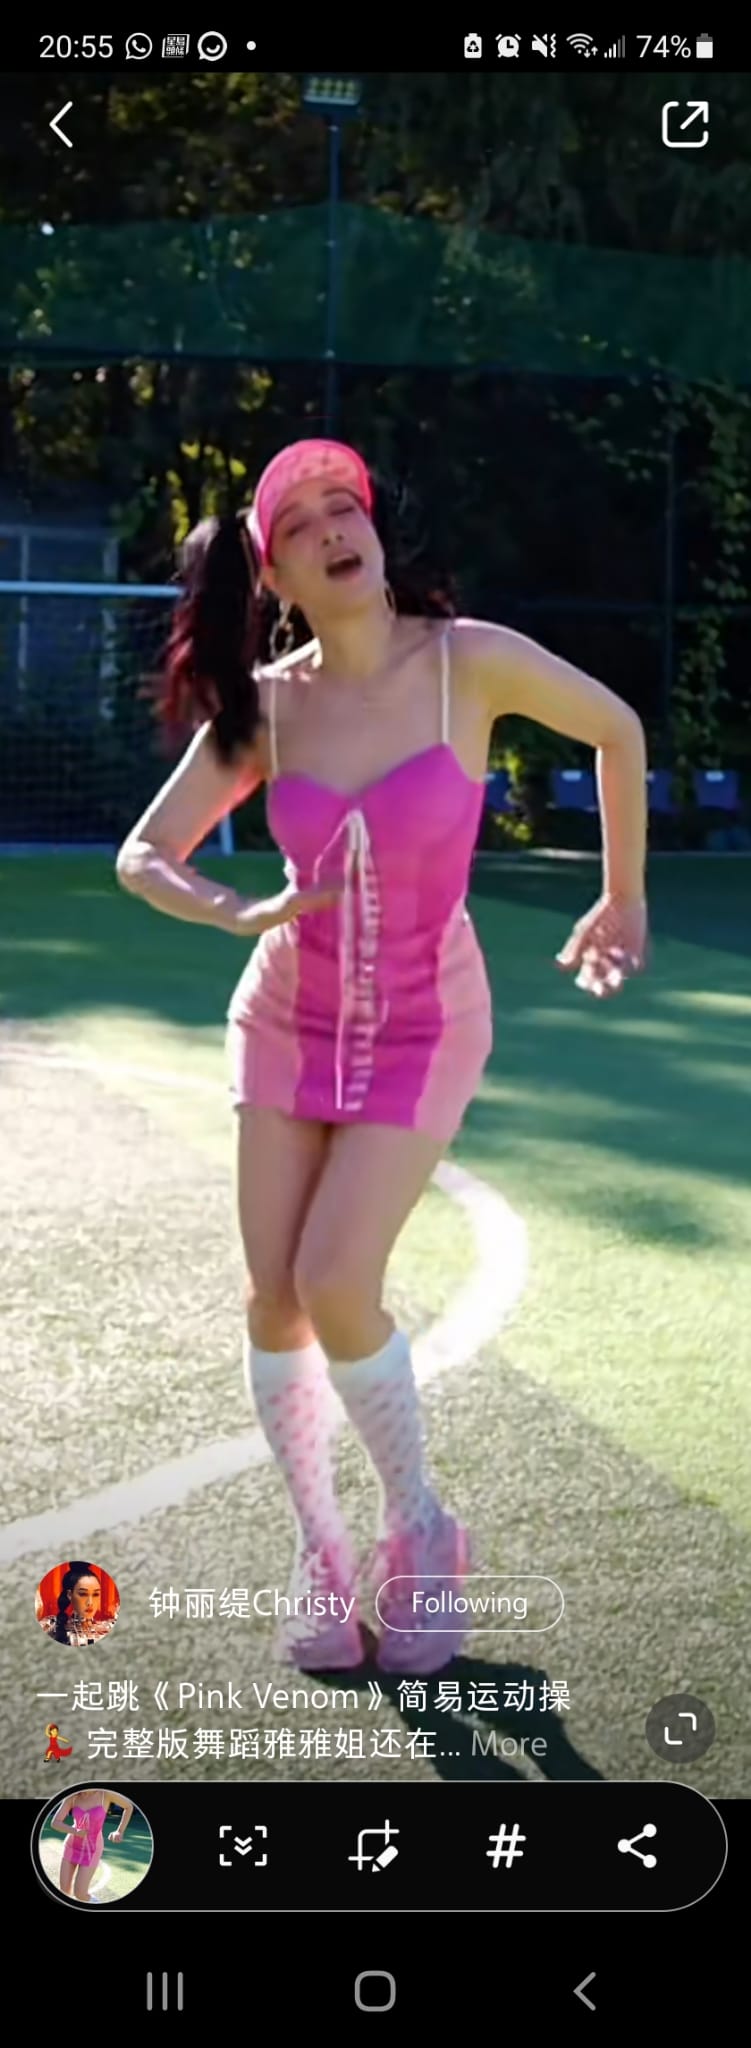 锺丽缇在片中大跳名为《Pink Venom》的健身舞。